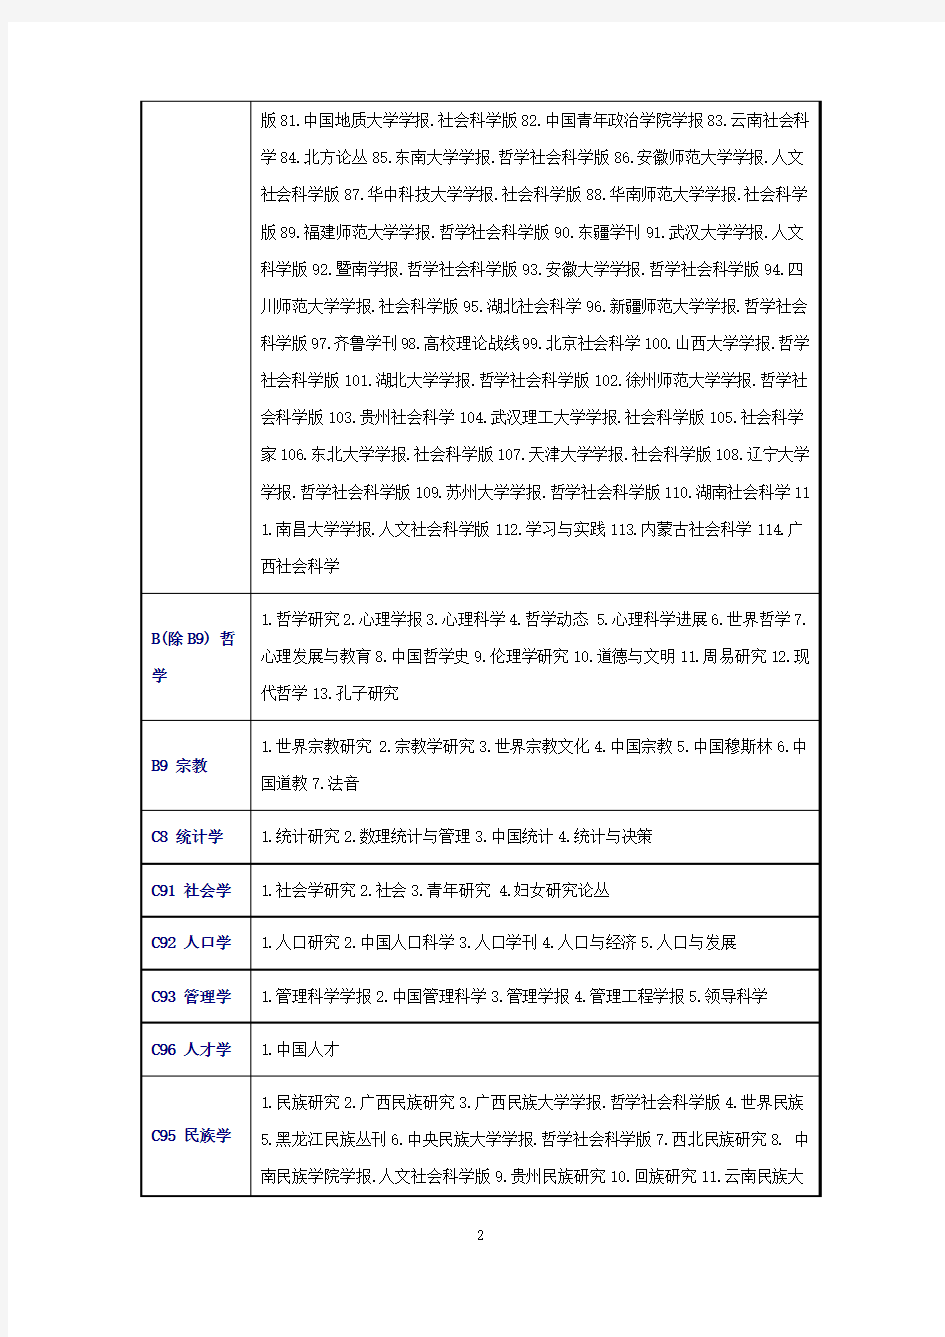 中文核心期刊要目总览(北大2014年版)